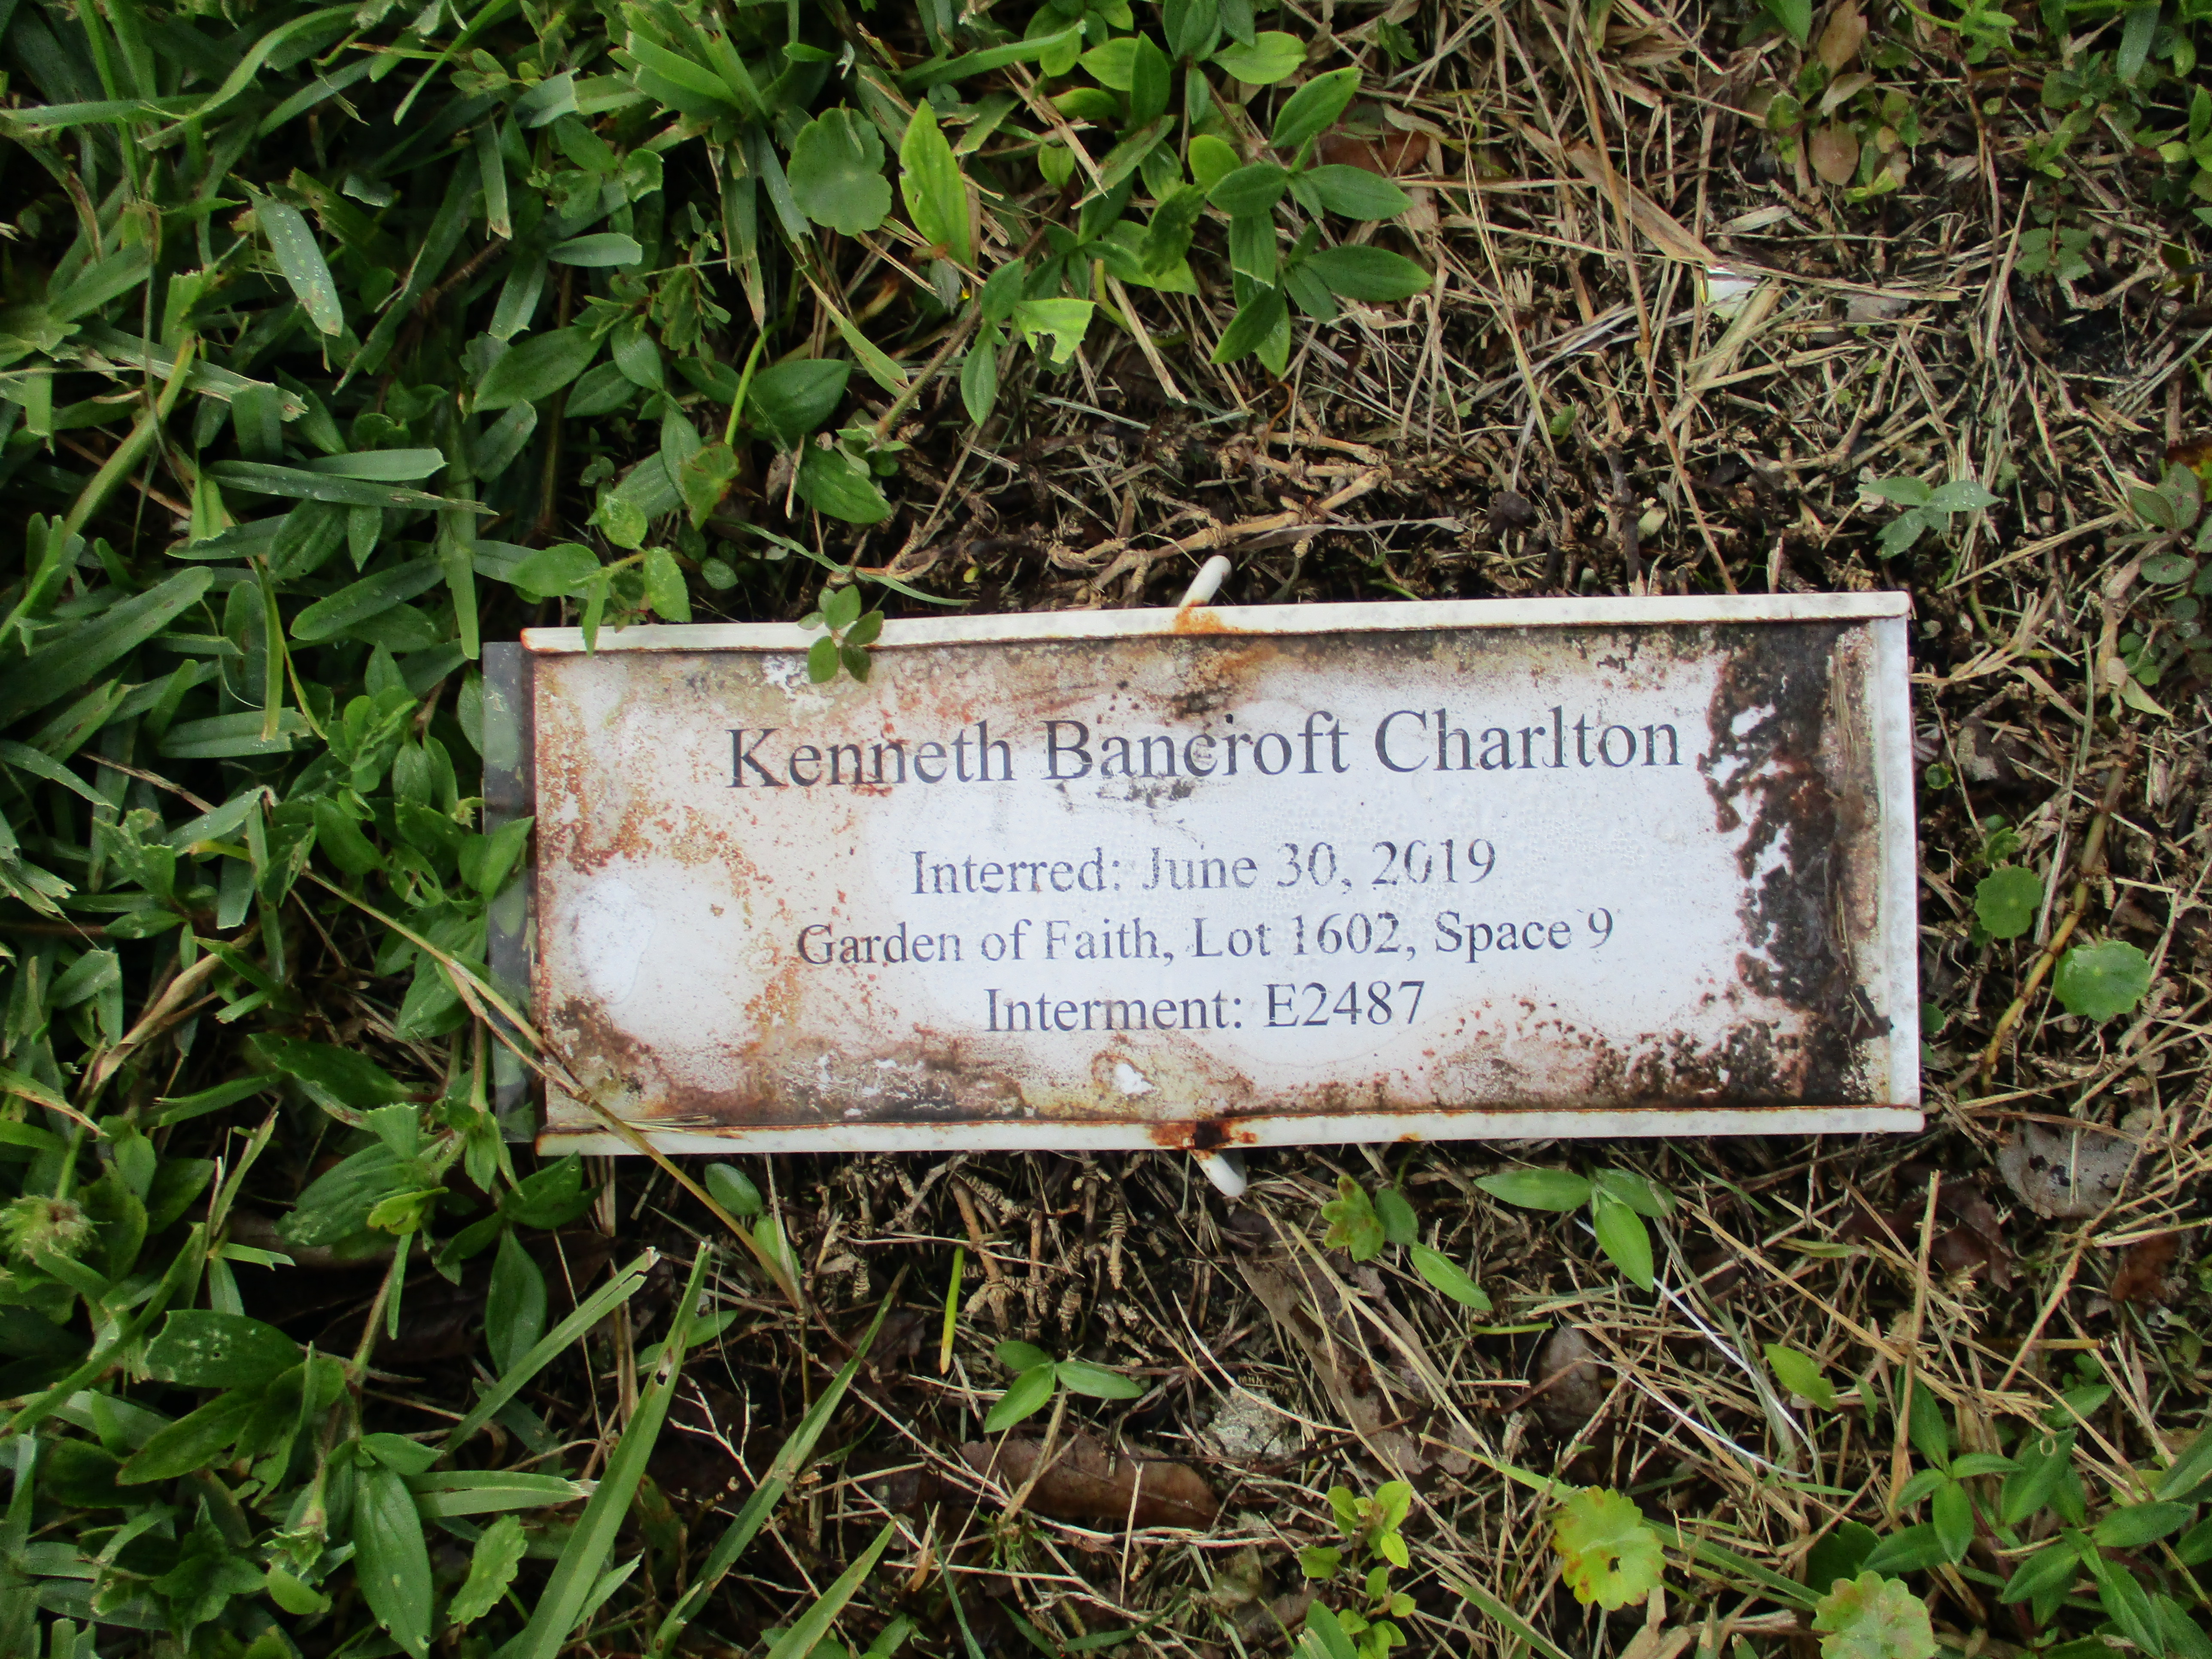 Kenneth Bancroft Charlton